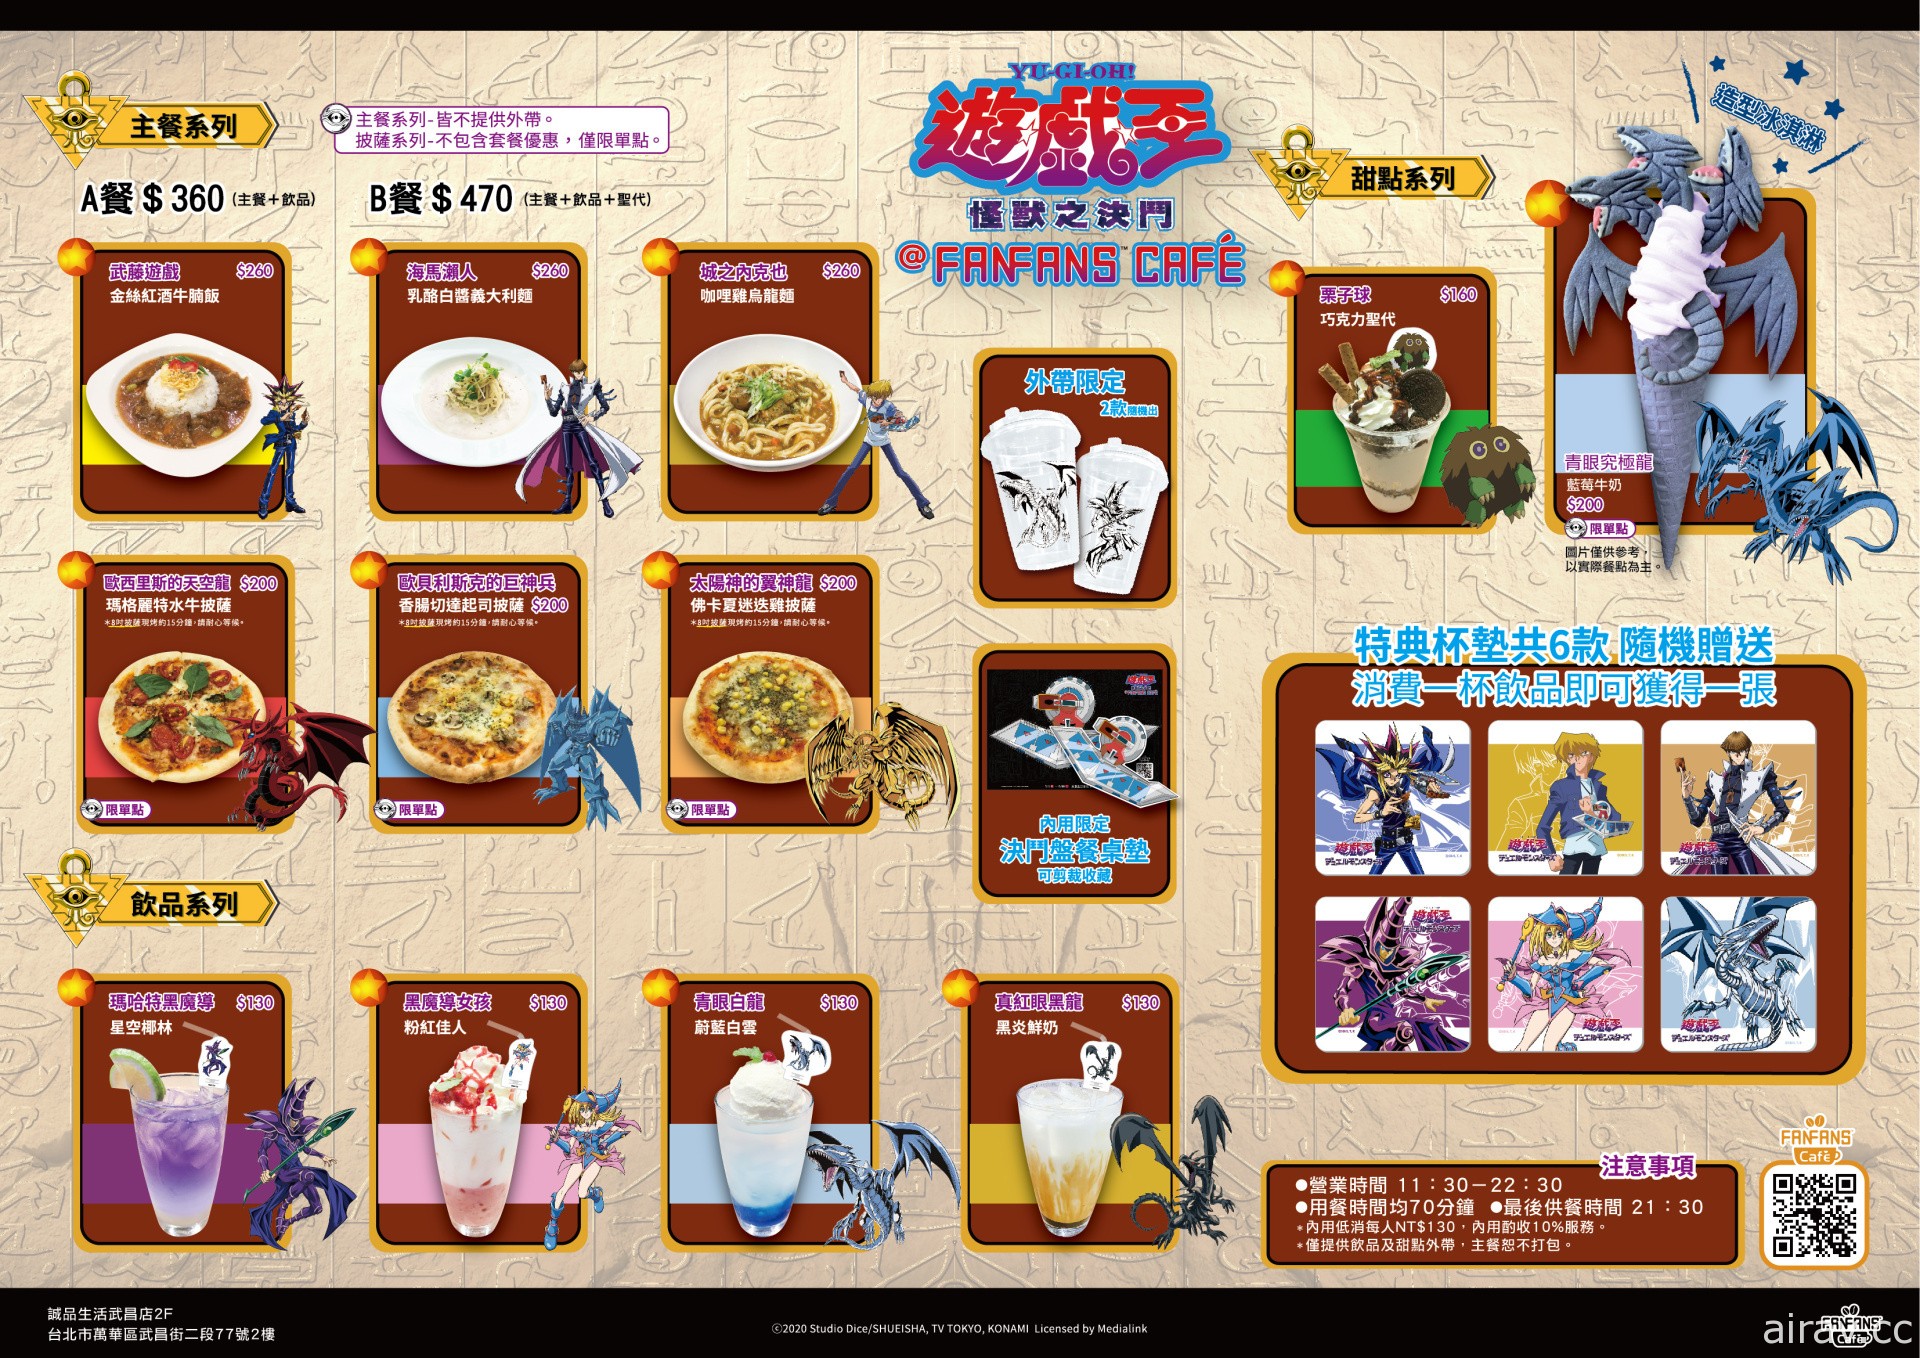 《游戏王》快闪主题餐厅 将于武昌诚品 FANFANS CAFÉ 再度登场